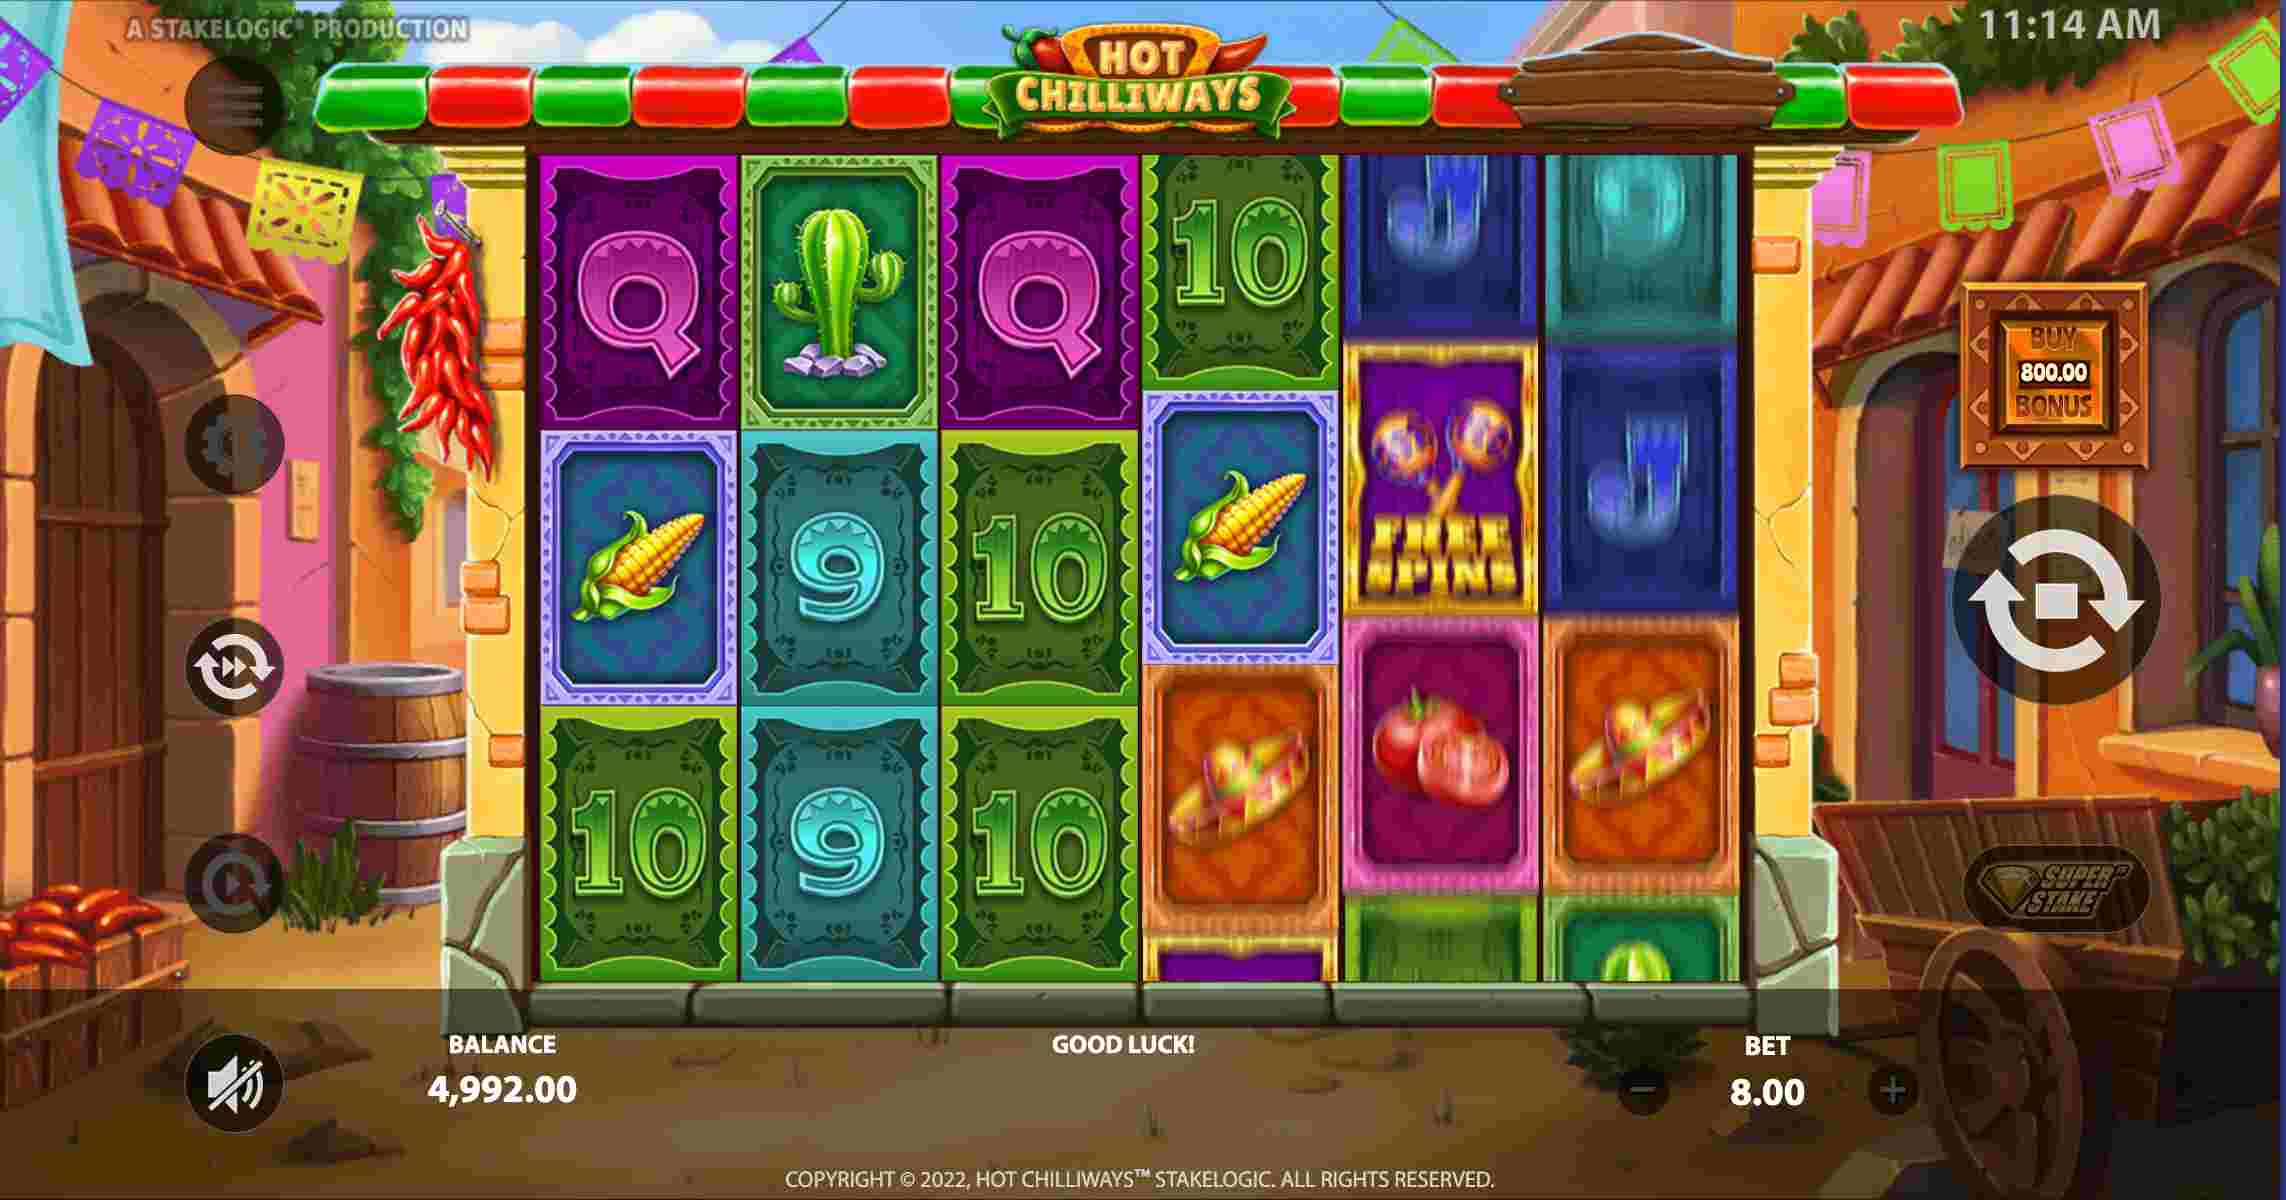 Hot Chilliways Gameplay Screenshot